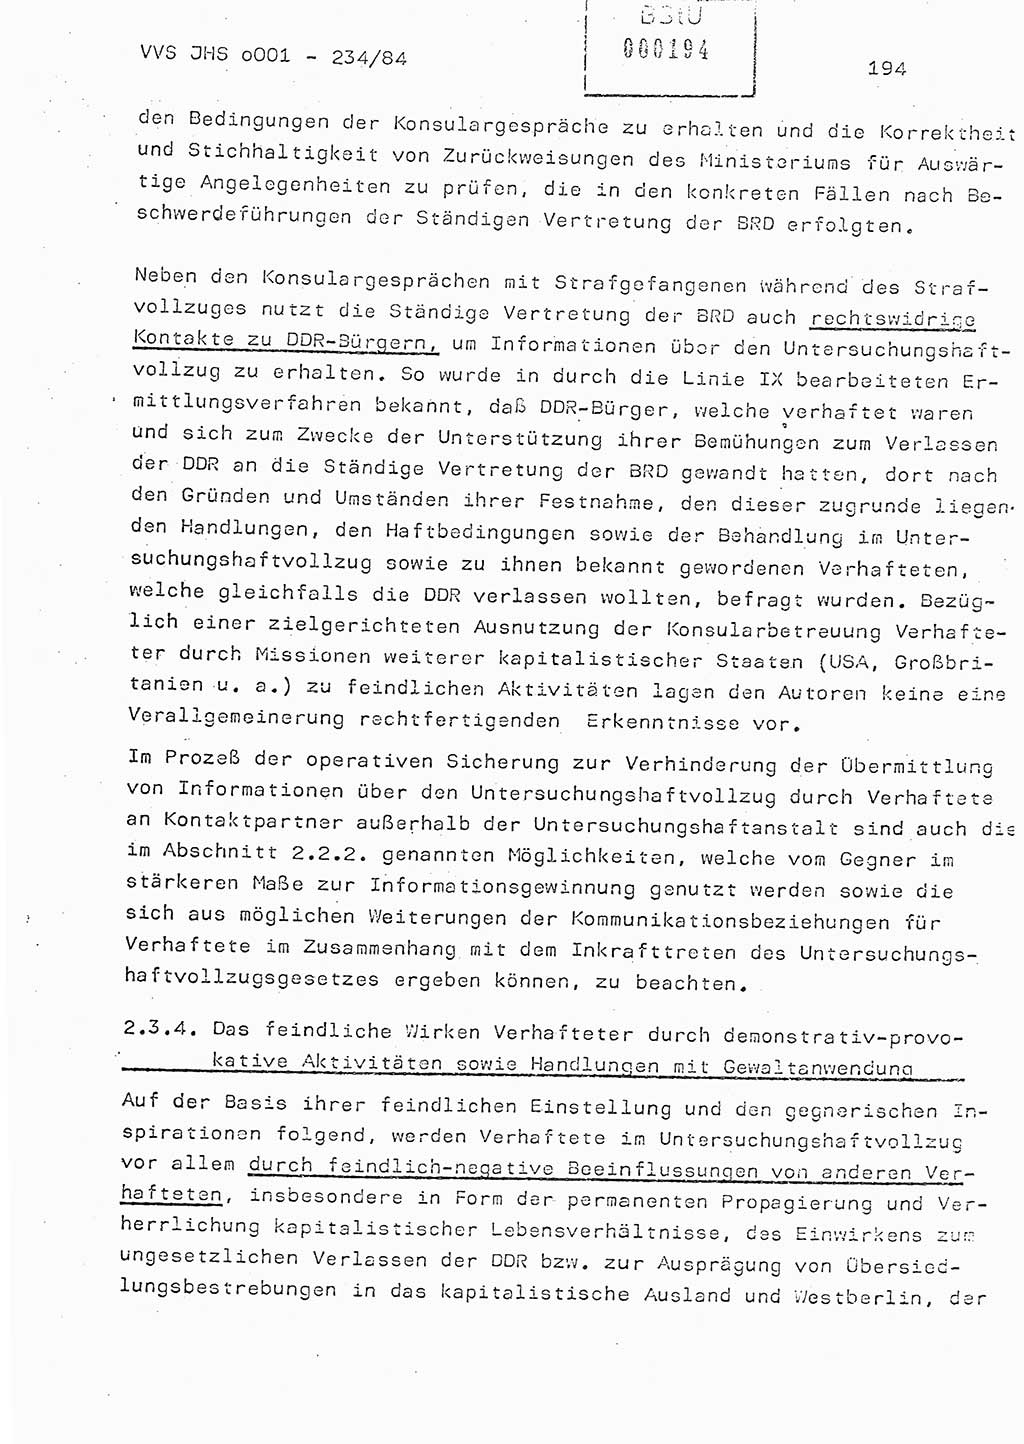 Dissertation Oberst Siegfried Rataizick (Abt. ⅩⅣ), Oberstleutnant Volkmar Heinz (Abt. ⅩⅣ), Oberstleutnant Werner Stein (HA Ⅸ), Hauptmann Heinz Conrad (JHS), Ministerium für Staatssicherheit (MfS) [Deutsche Demokratische Republik (DDR)], Juristische Hochschule (JHS), Vertrauliche Verschlußsache (VVS) o001-234/84, Potsdam 1984, Seite 194 (Diss. MfS DDR JHS VVS o001-234/84 1984, S. 194)